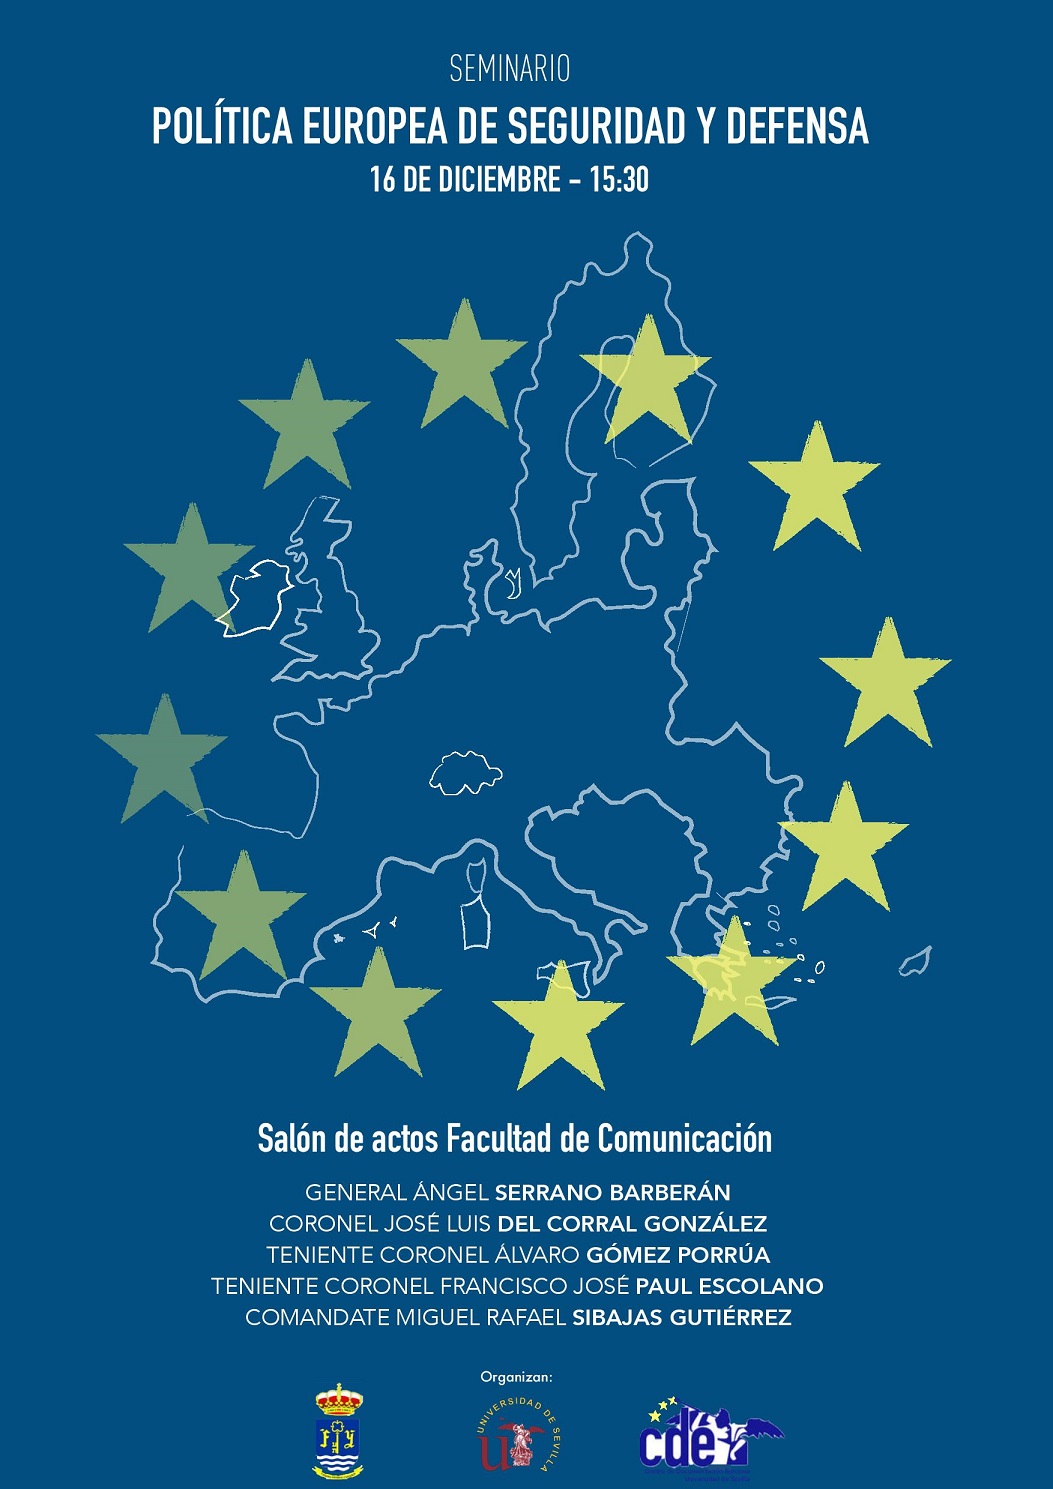 Seminario "Política Europea de Seguridad y Defensa" en la FCom